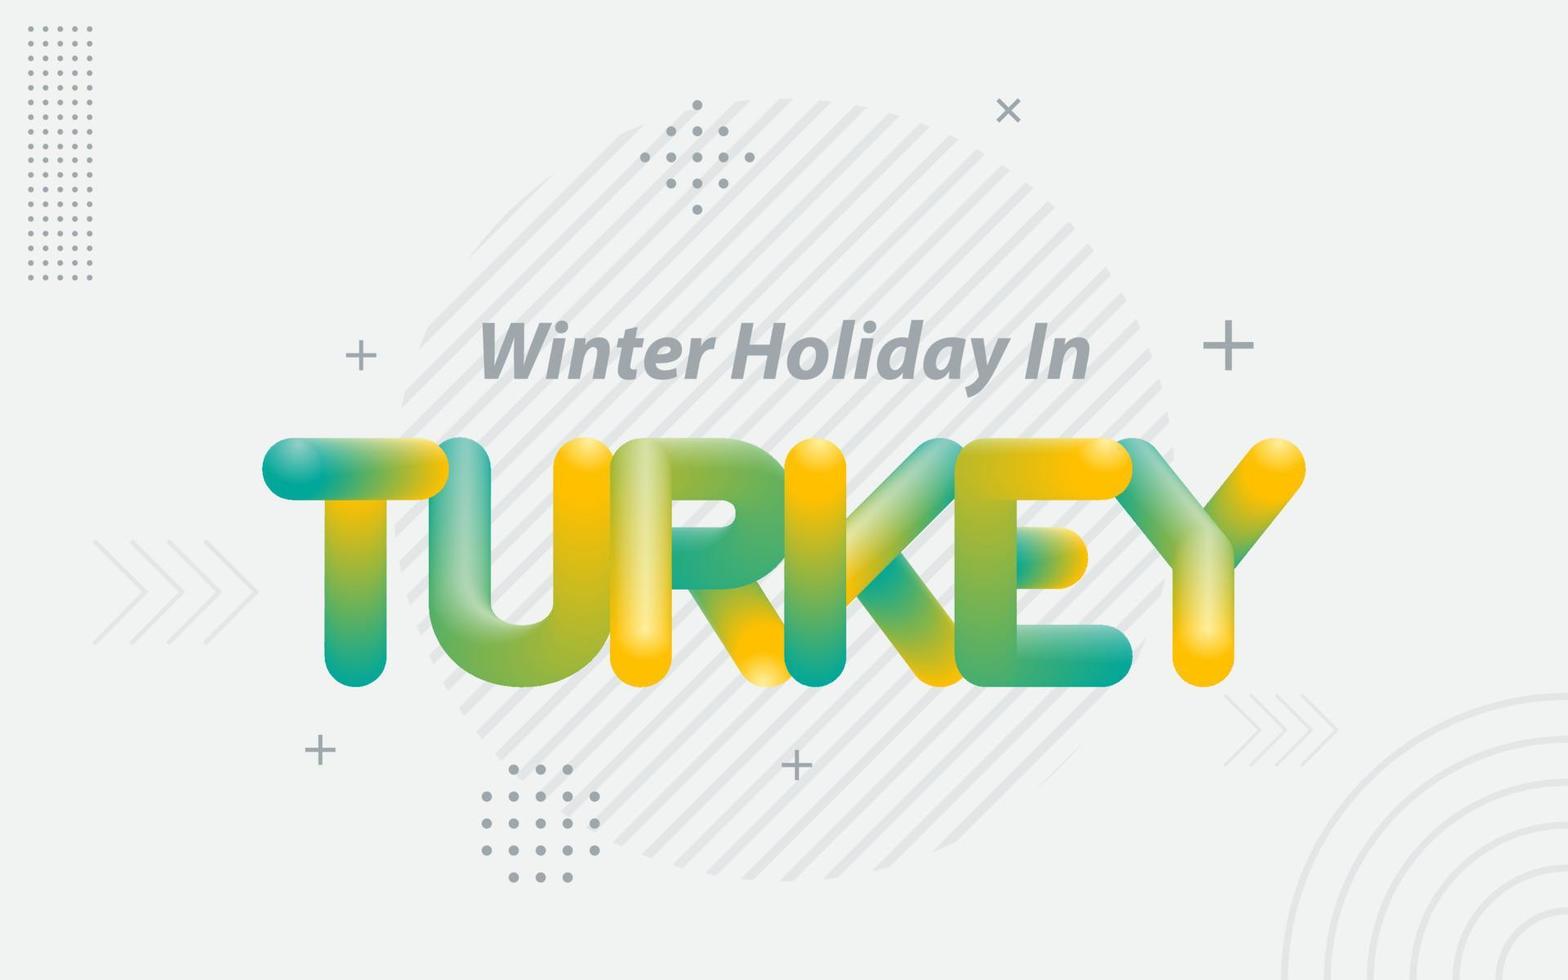 vacaciones de invierno en turquía. tipografía creativa con efecto de mezcla 3d vector